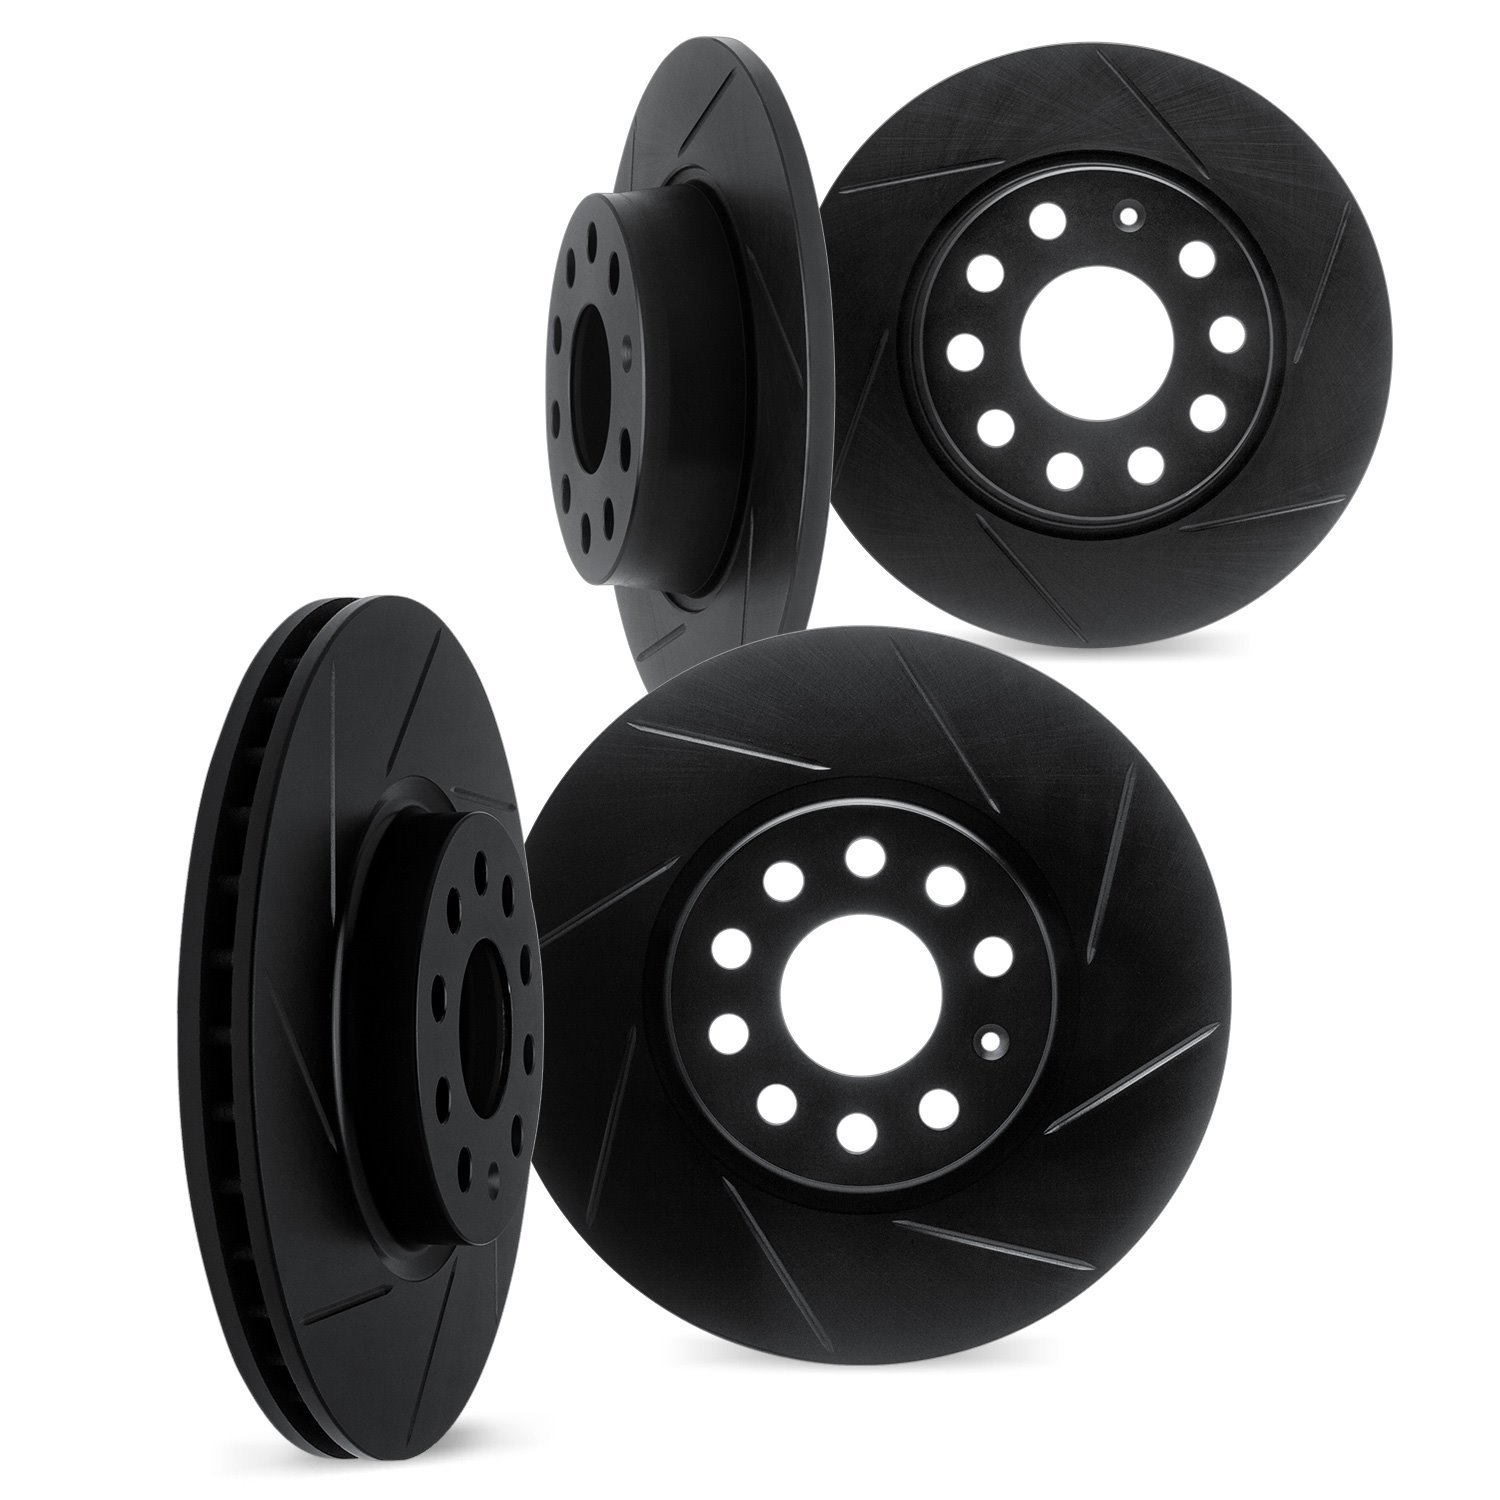 3004-03029 Slotted Brake Rotors [Black], Fits Select Kia/Hyundai/Genesis, Position: Front and Rear